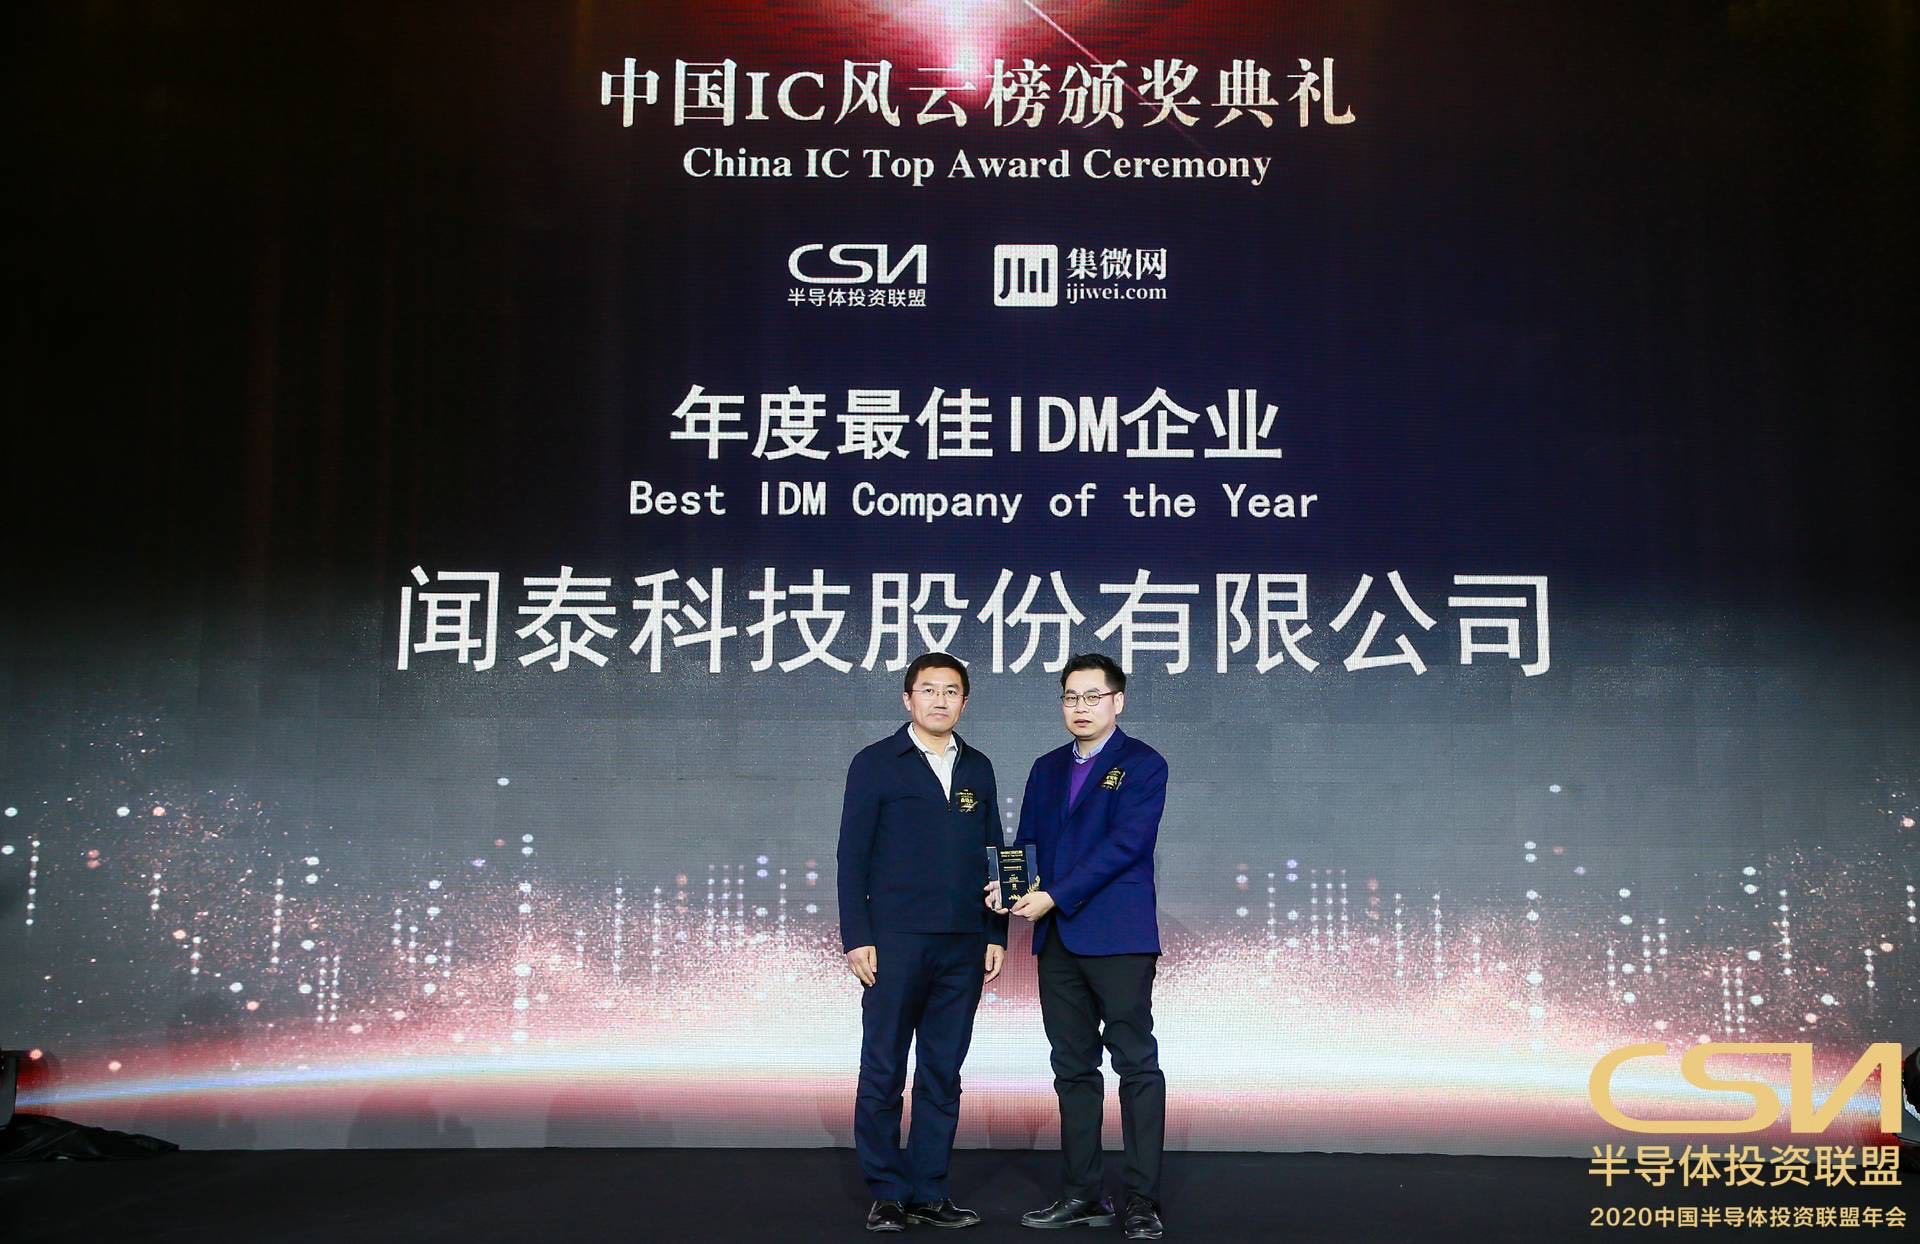 “2020中国IC风云榜”揭晓 闻泰科技荣获年度最佳IDM大奖